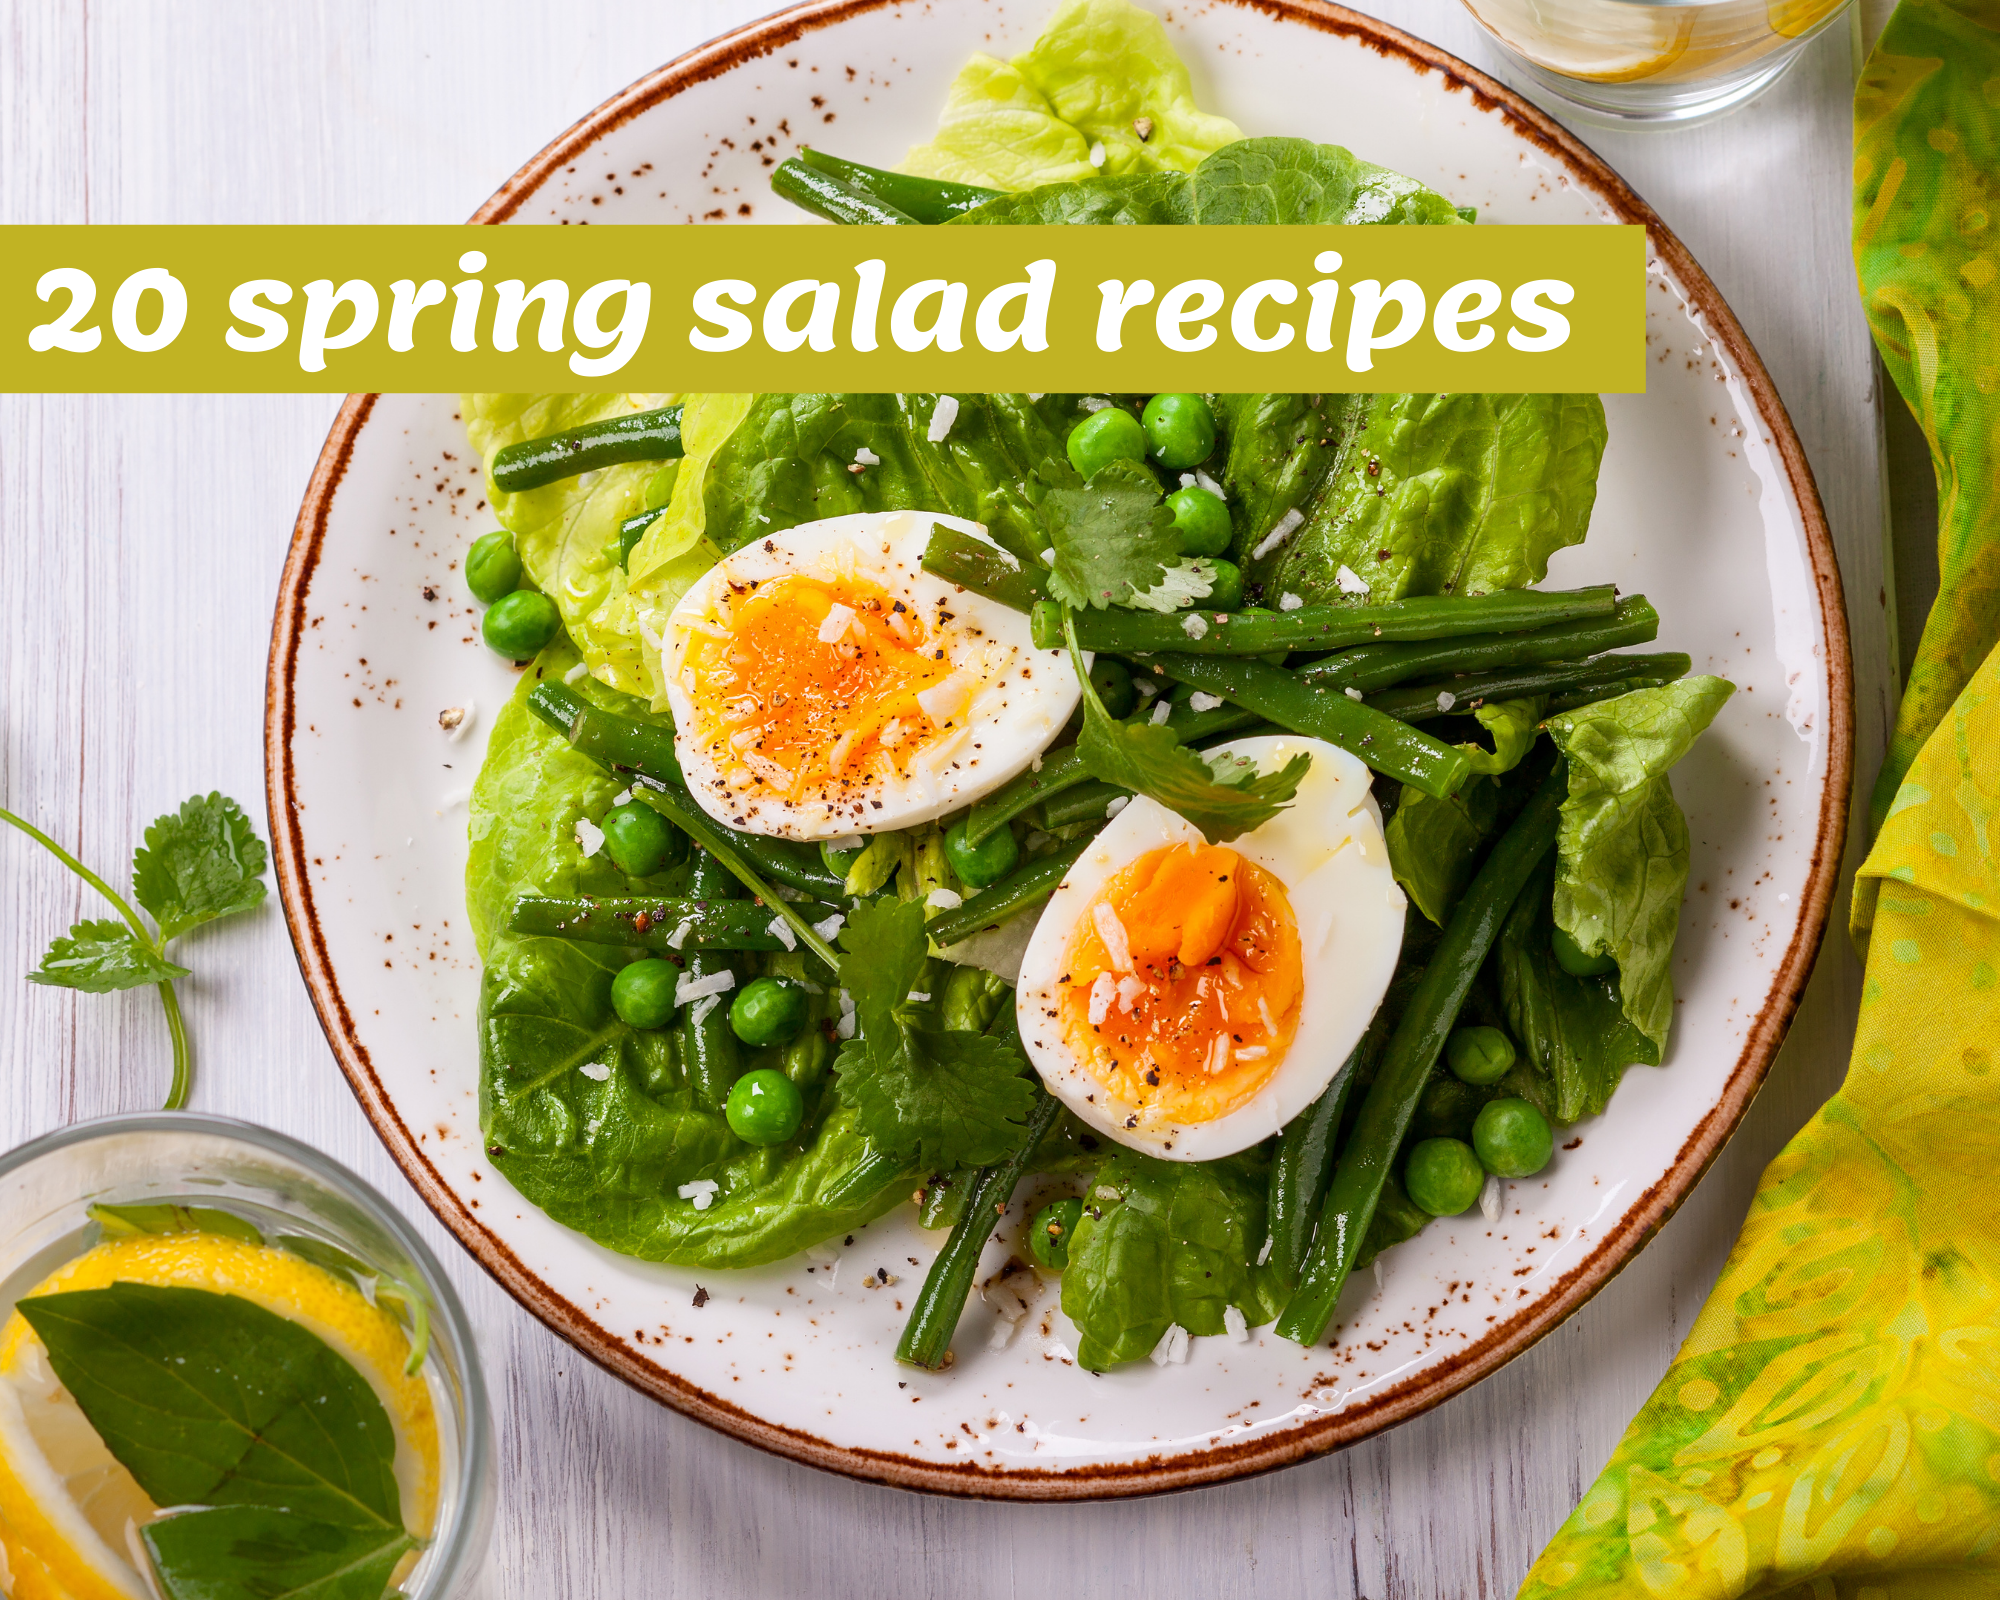 Spring salad recipes